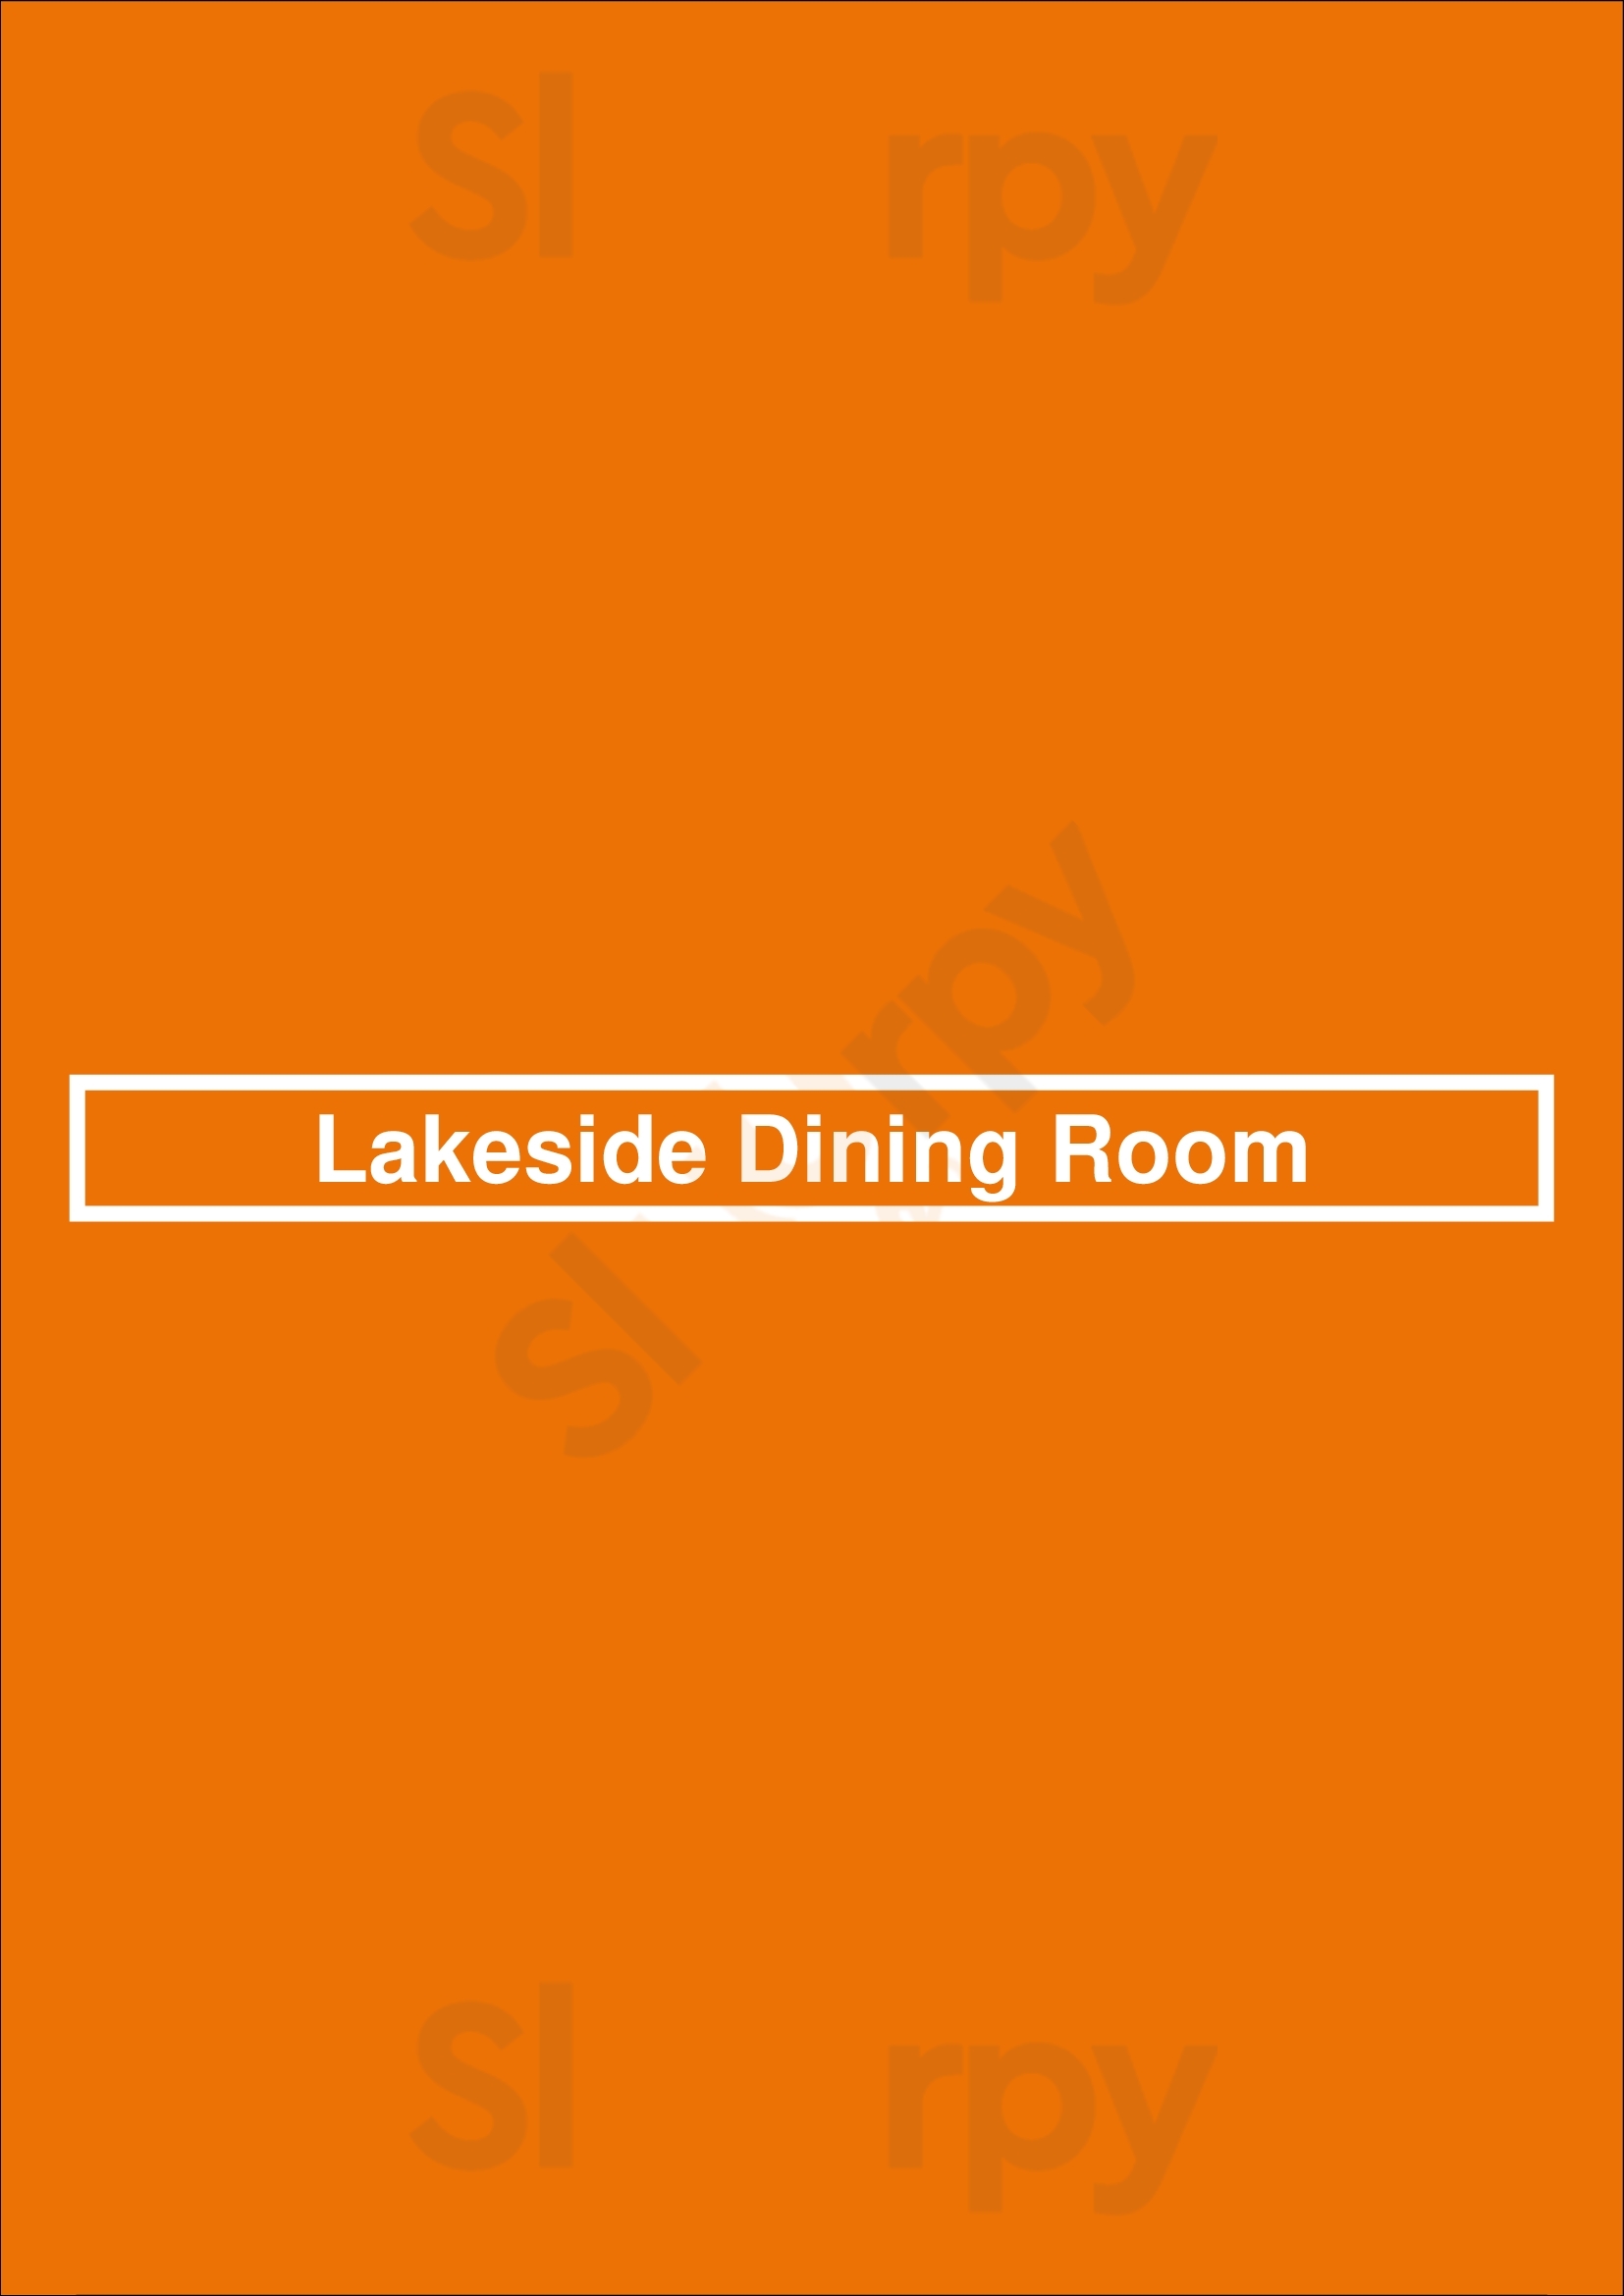 Lakeside Dining Room Kelowna Menu - 1